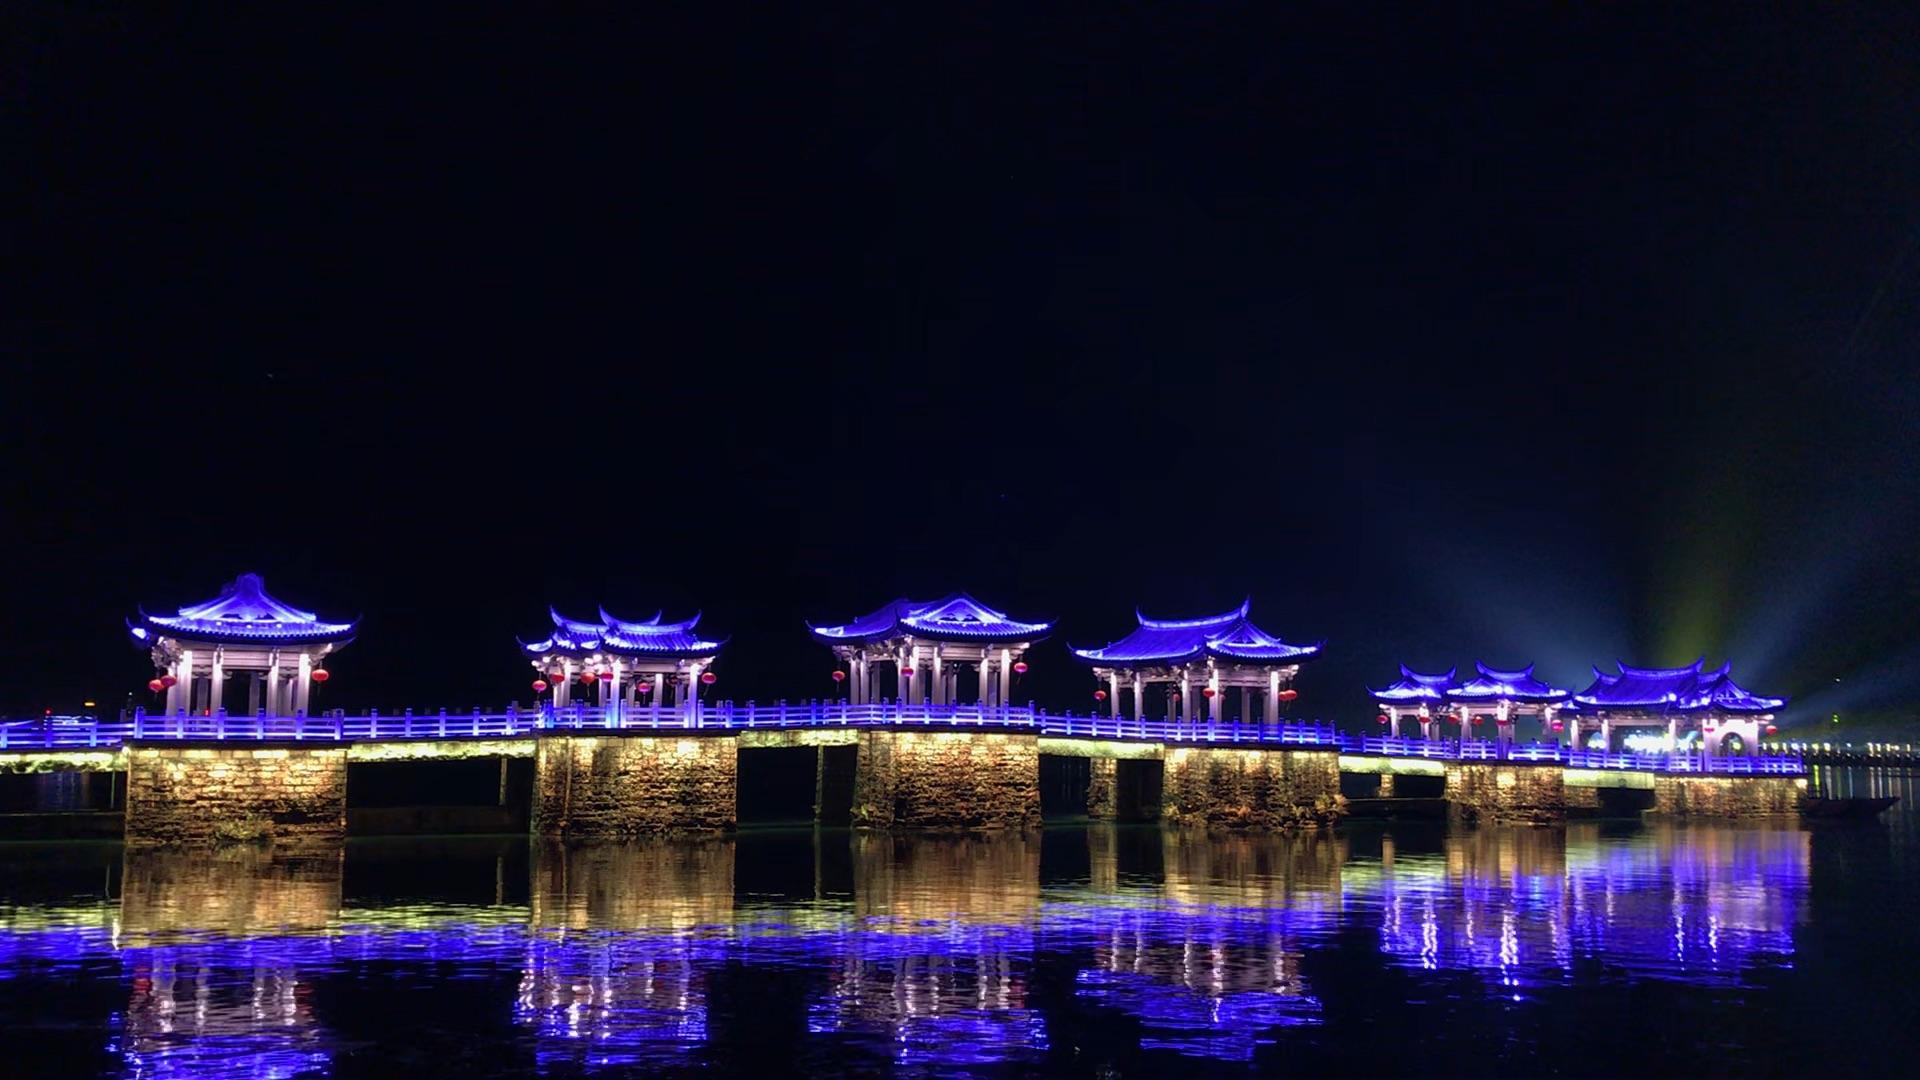 广济桥灯光秀2021图片